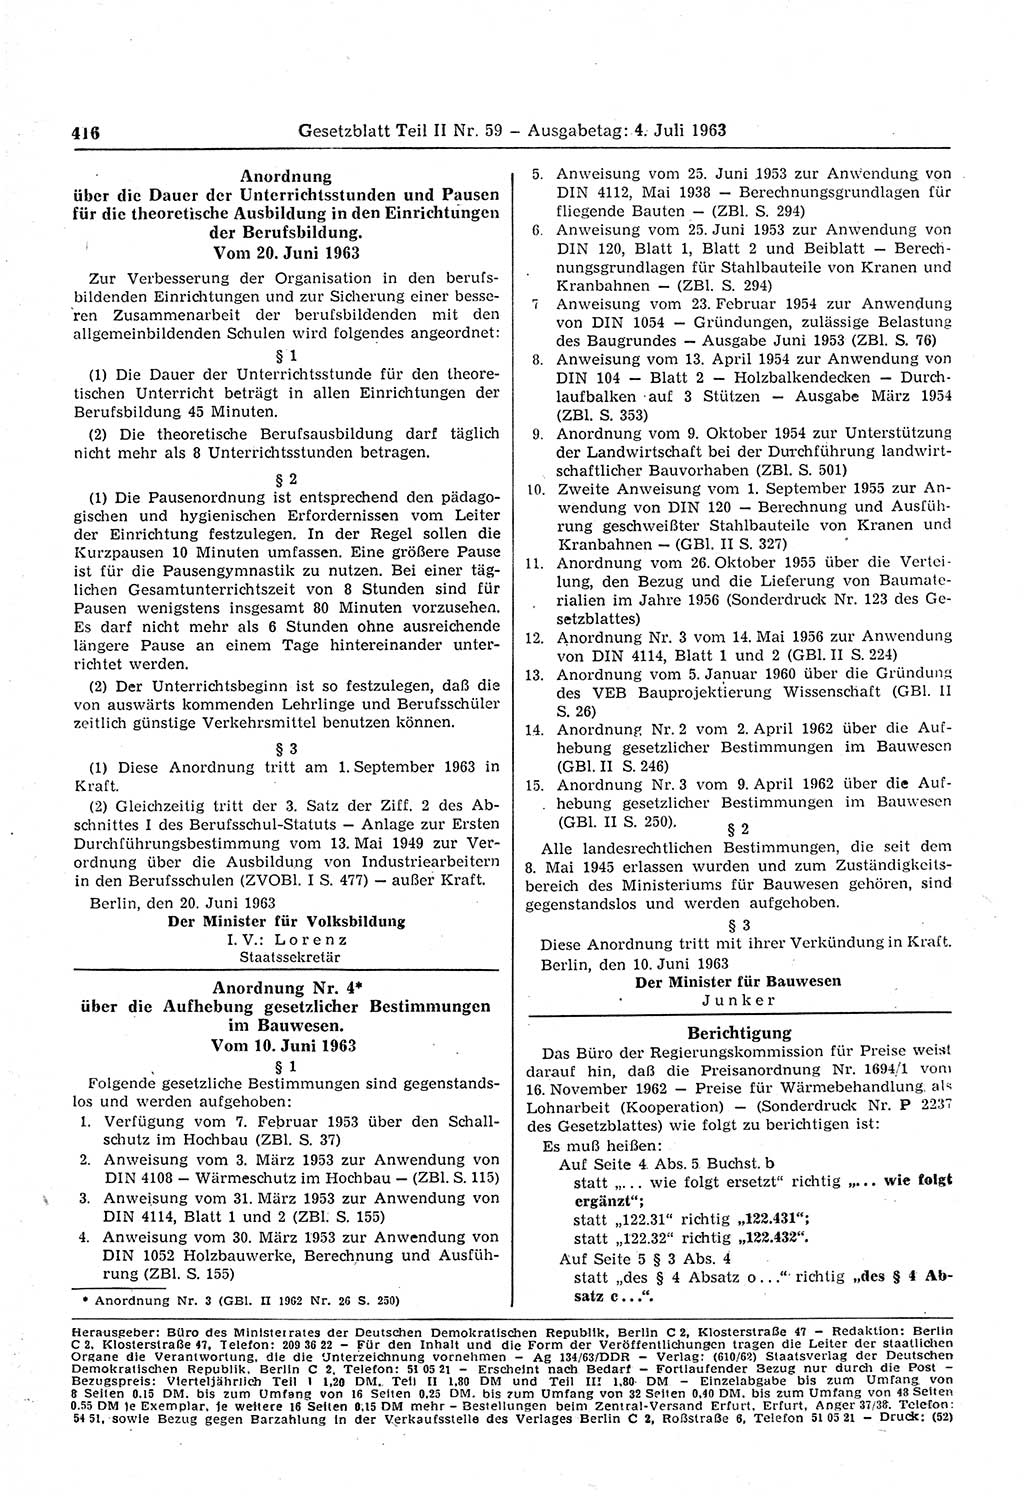 Gesetzblatt (GBl.) der Deutschen Demokratischen Republik (DDR) Teil ⅠⅠ 1963, Seite 416 (GBl. DDR ⅠⅠ 1963, S. 416)